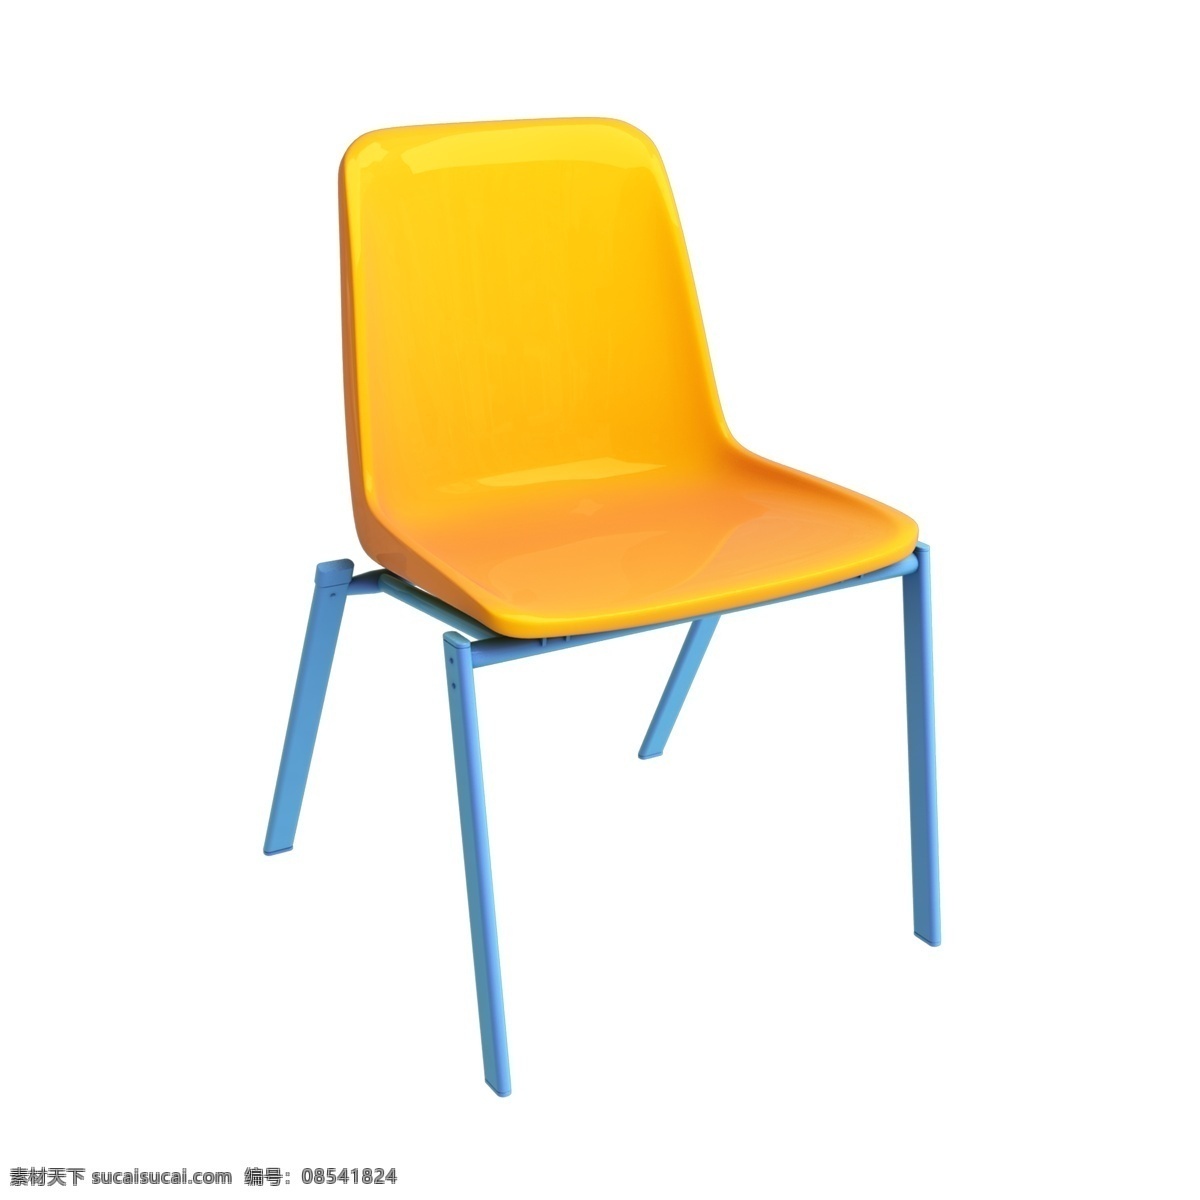 写实 质感 3d 座椅 家装 家居 家具 后现代 现代 简约 北欧 时尚 装修 家装节 座位 椅子 凳子 沙发 板凳